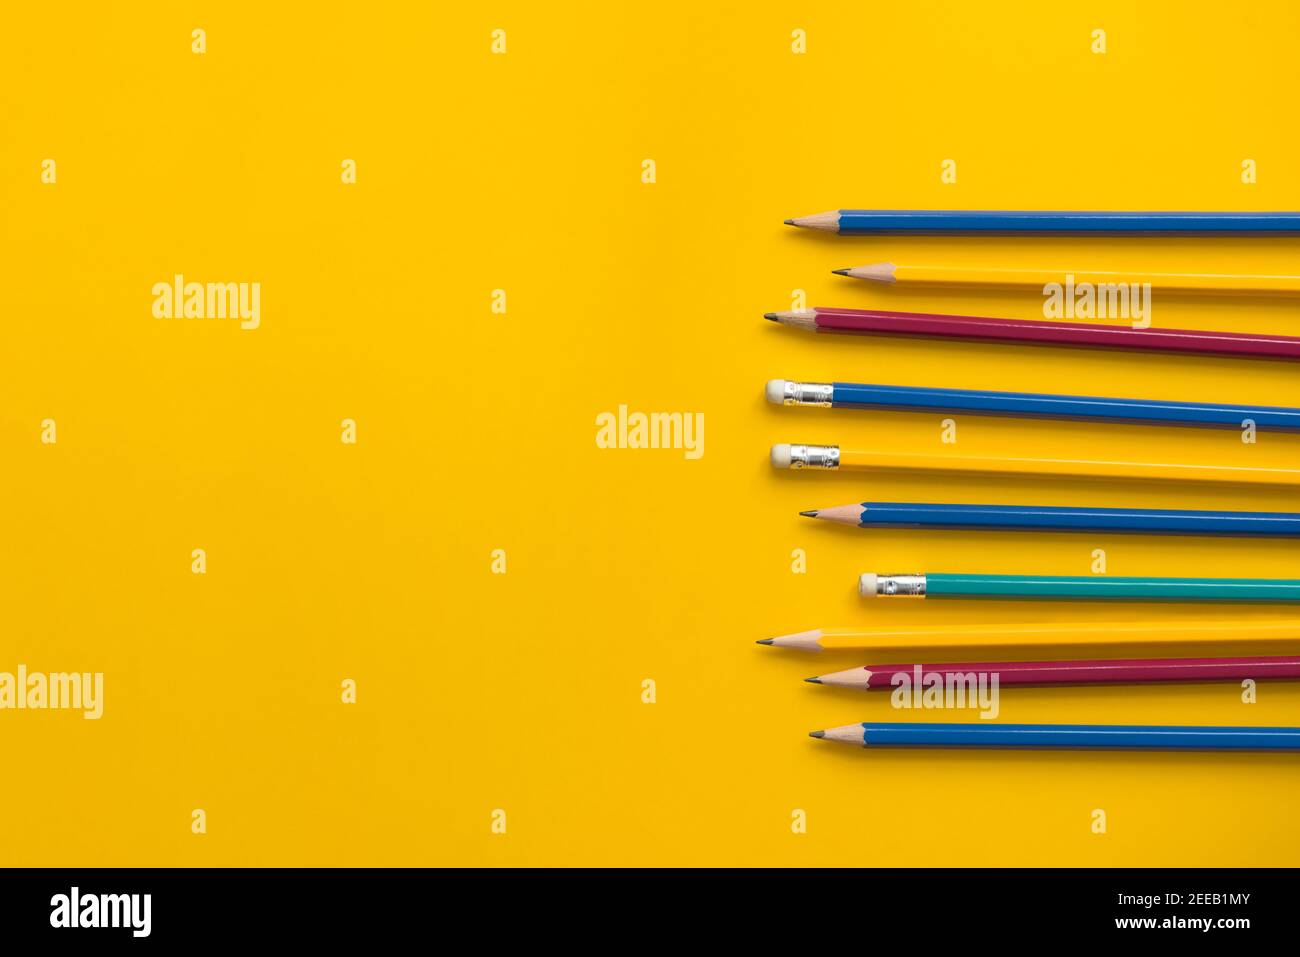 Juego de lápices de colores sobre papel amarillo con espacio de copia, concepto educativo de bakground Foto de stock